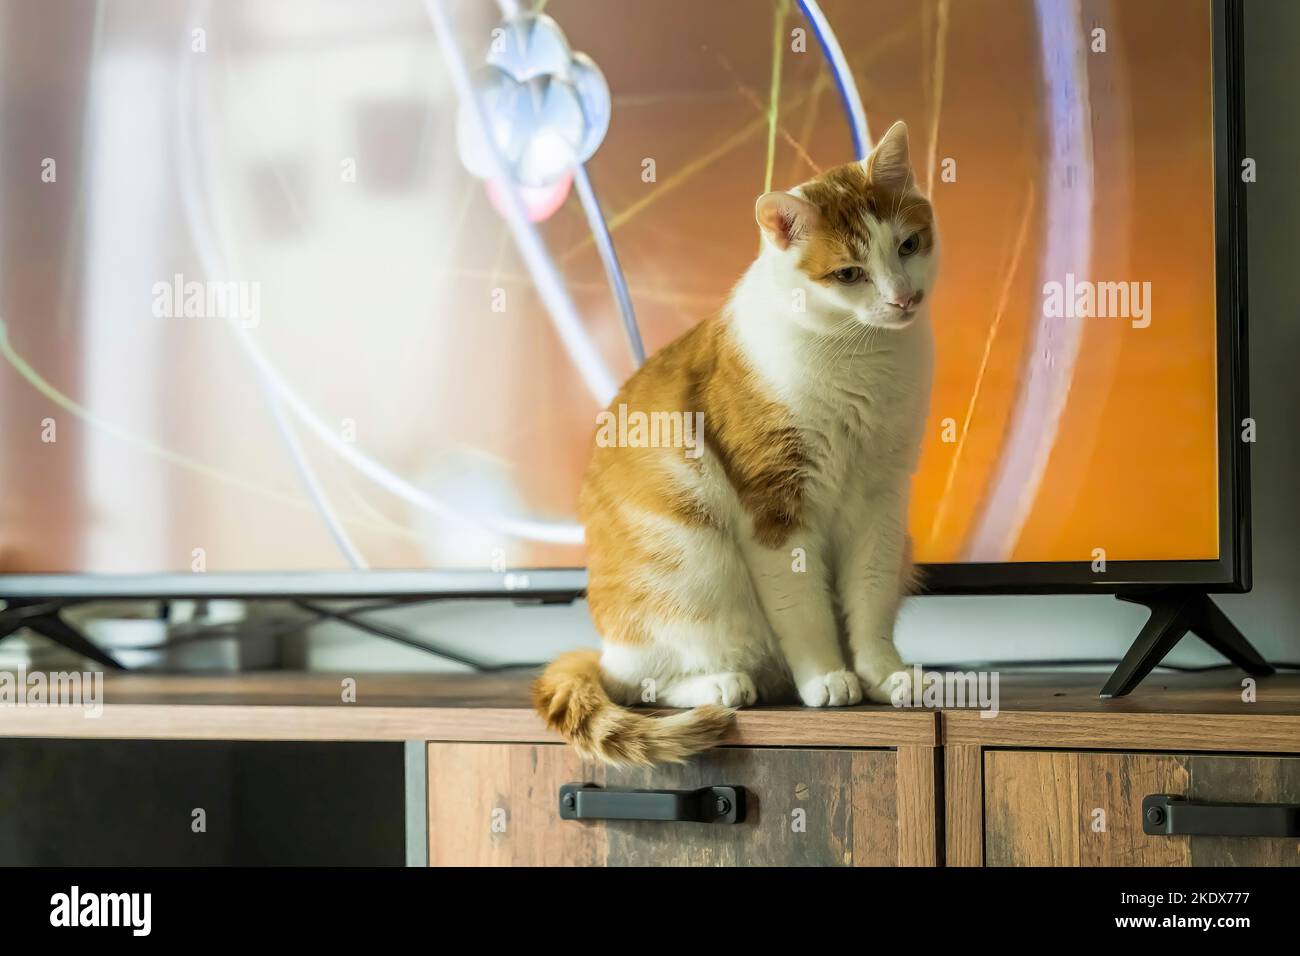 Davanti al televisore si trova un gatto rosso e bianco Foto Stock